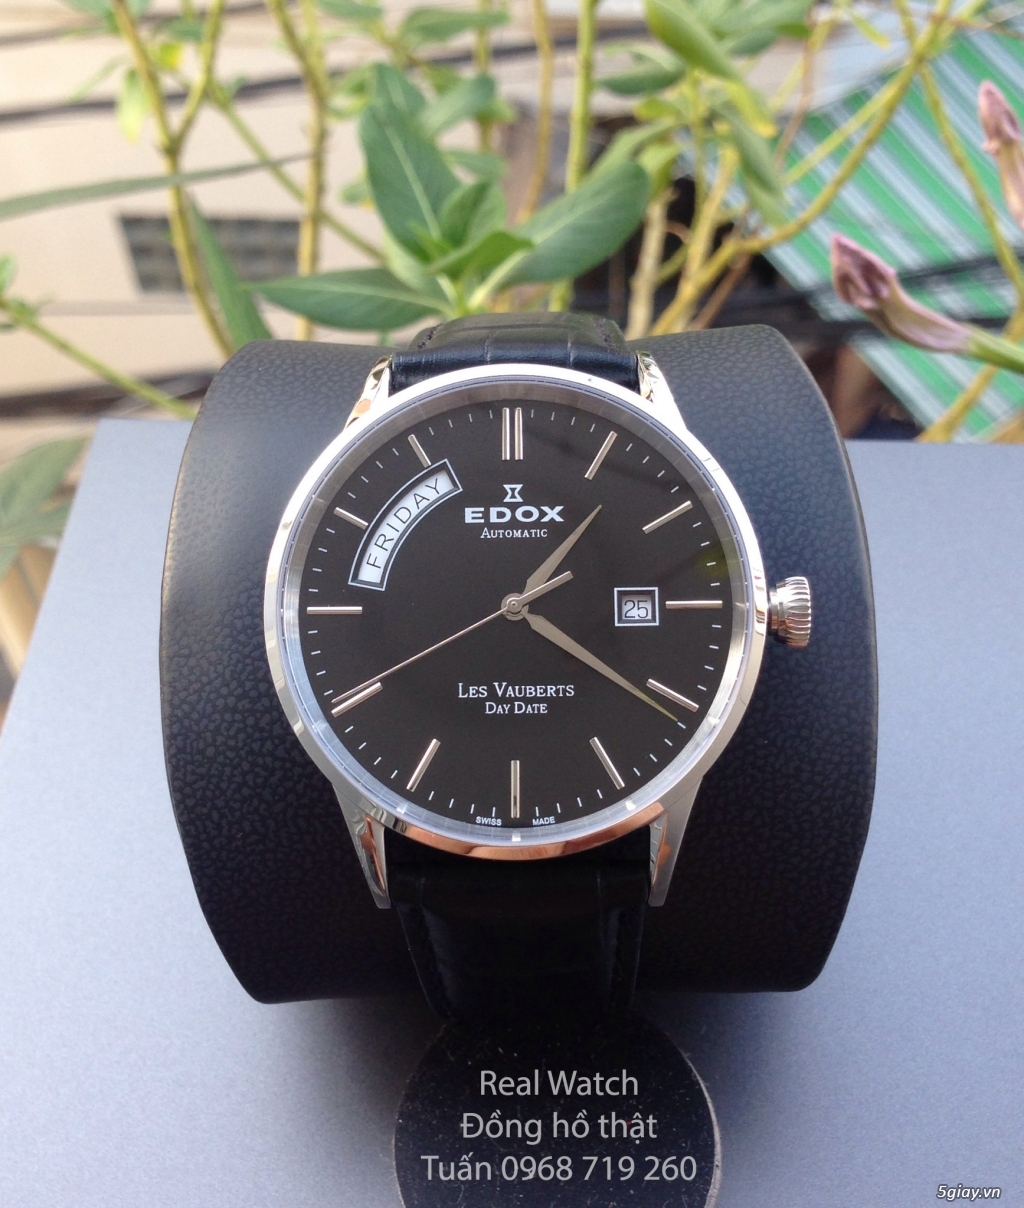 Đồng hồ  THỤY SĨ chính hãng Edox AUTOMATIC -ĐỒNG HỒ THẬT CHÍNH HÃNG - 1